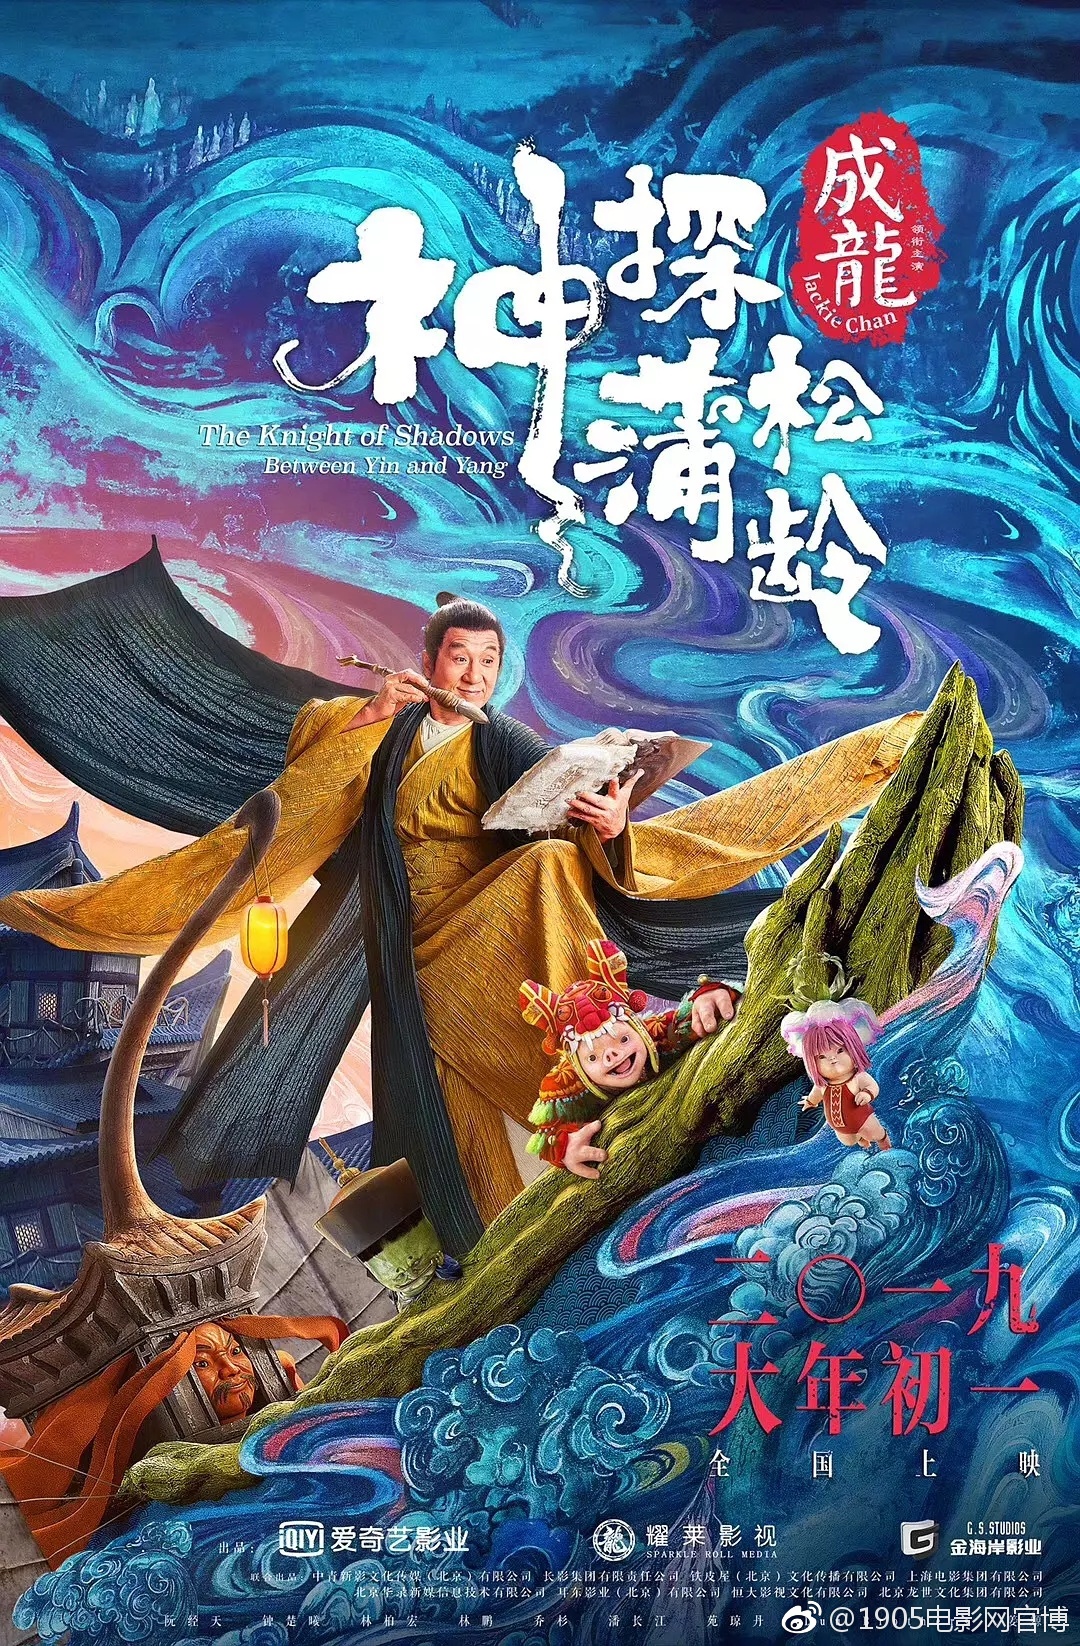 2019年中国大陆电影配额抽签结果在台北出炉